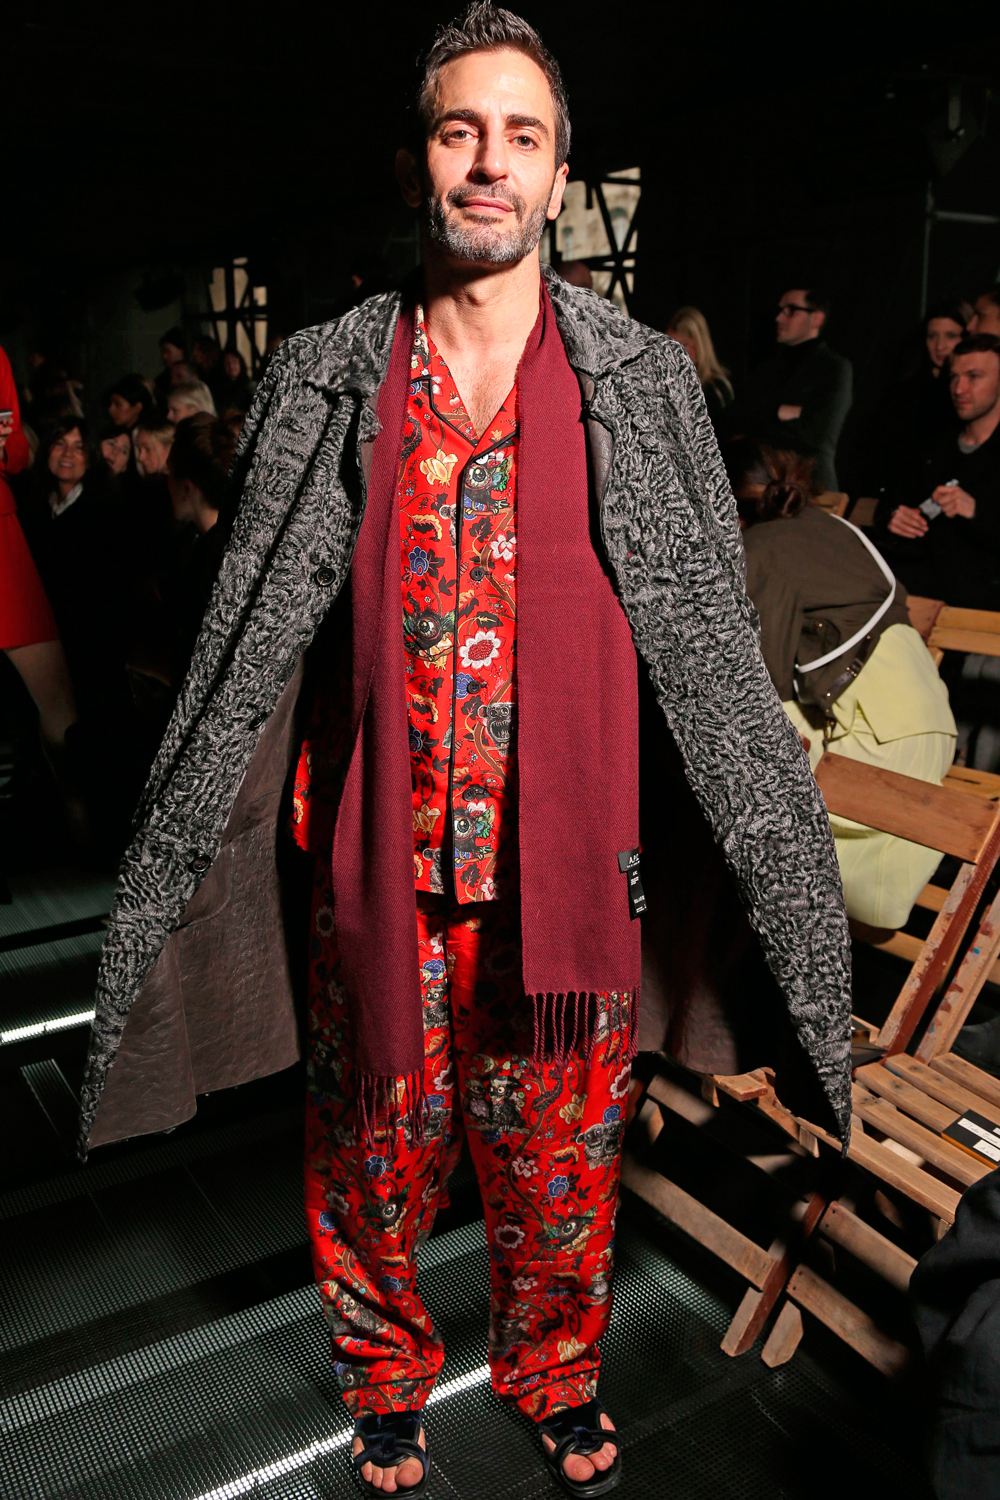 Designer Marc Jacobs leaves Louis Vuitton